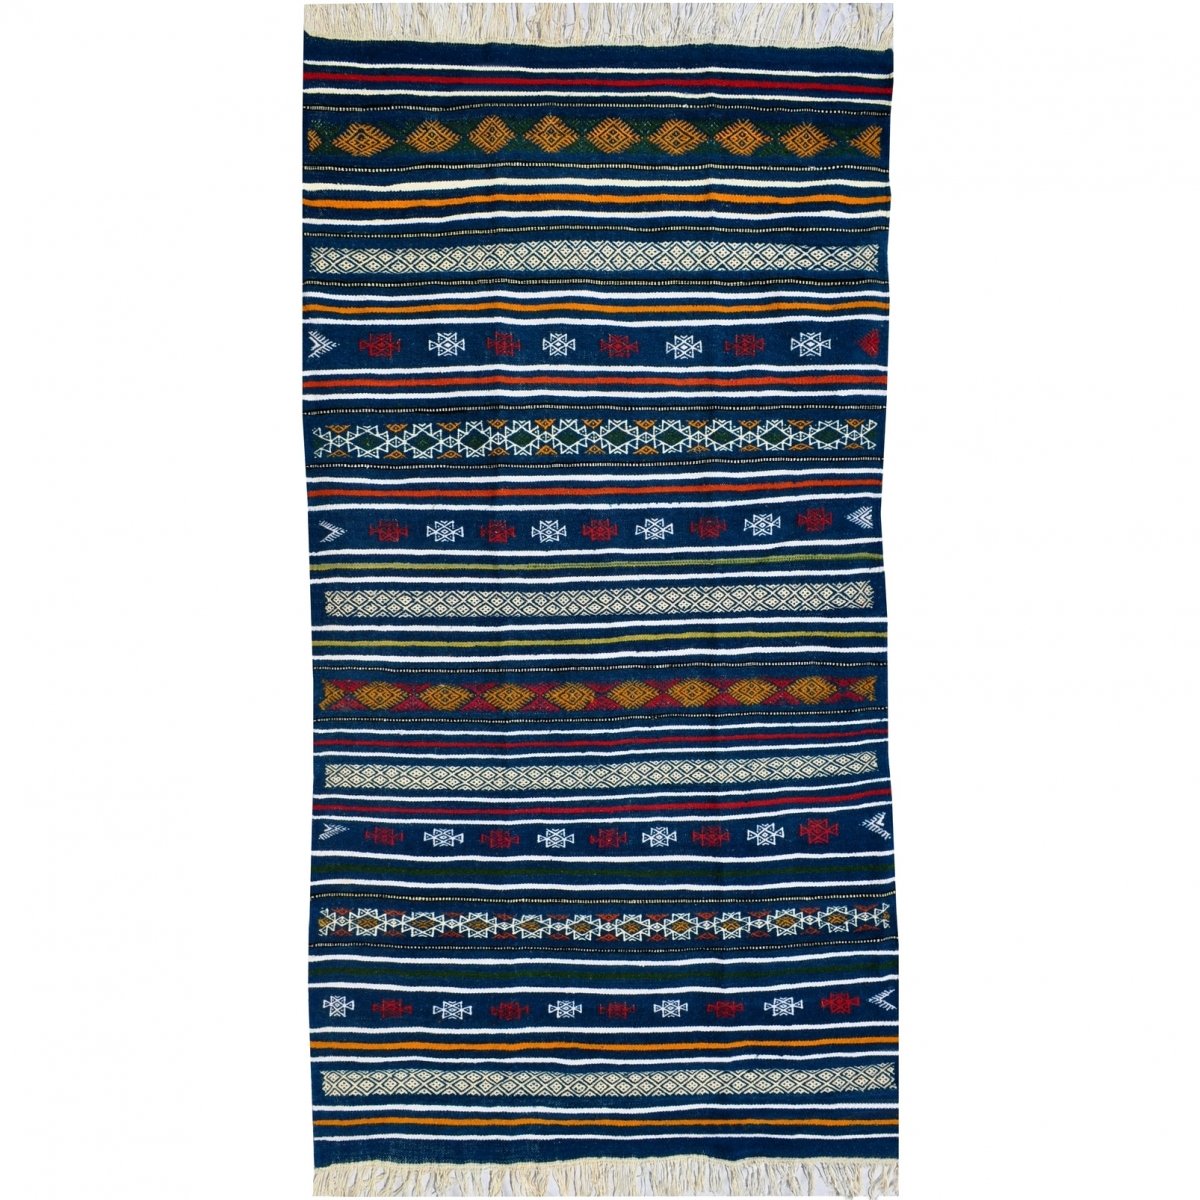 Tapete berbere Tapete Kilim Bargou 100x190 Azul/Amarelo/Vermelho (Tecidos à mão, Lã) Tapete tunisiano kilim, estilo marroquino. 